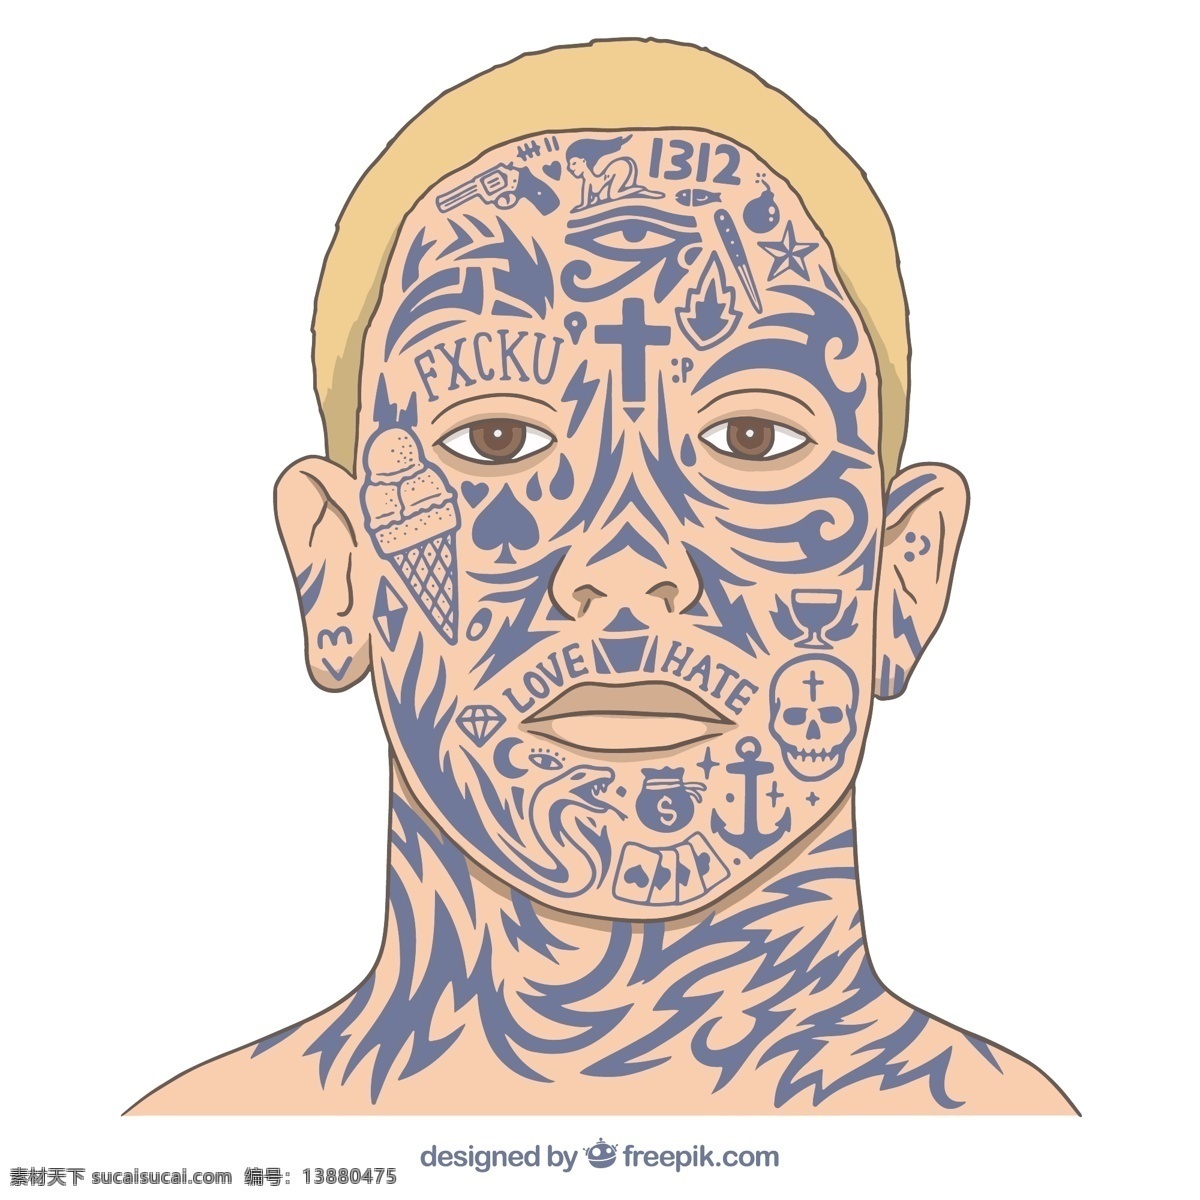 面部纹身 复古 手工 印花 线条 油漆 头骨 眼睛 刷子 艺术 纹身 人类 十字架 血液 部落 绘画 墨水